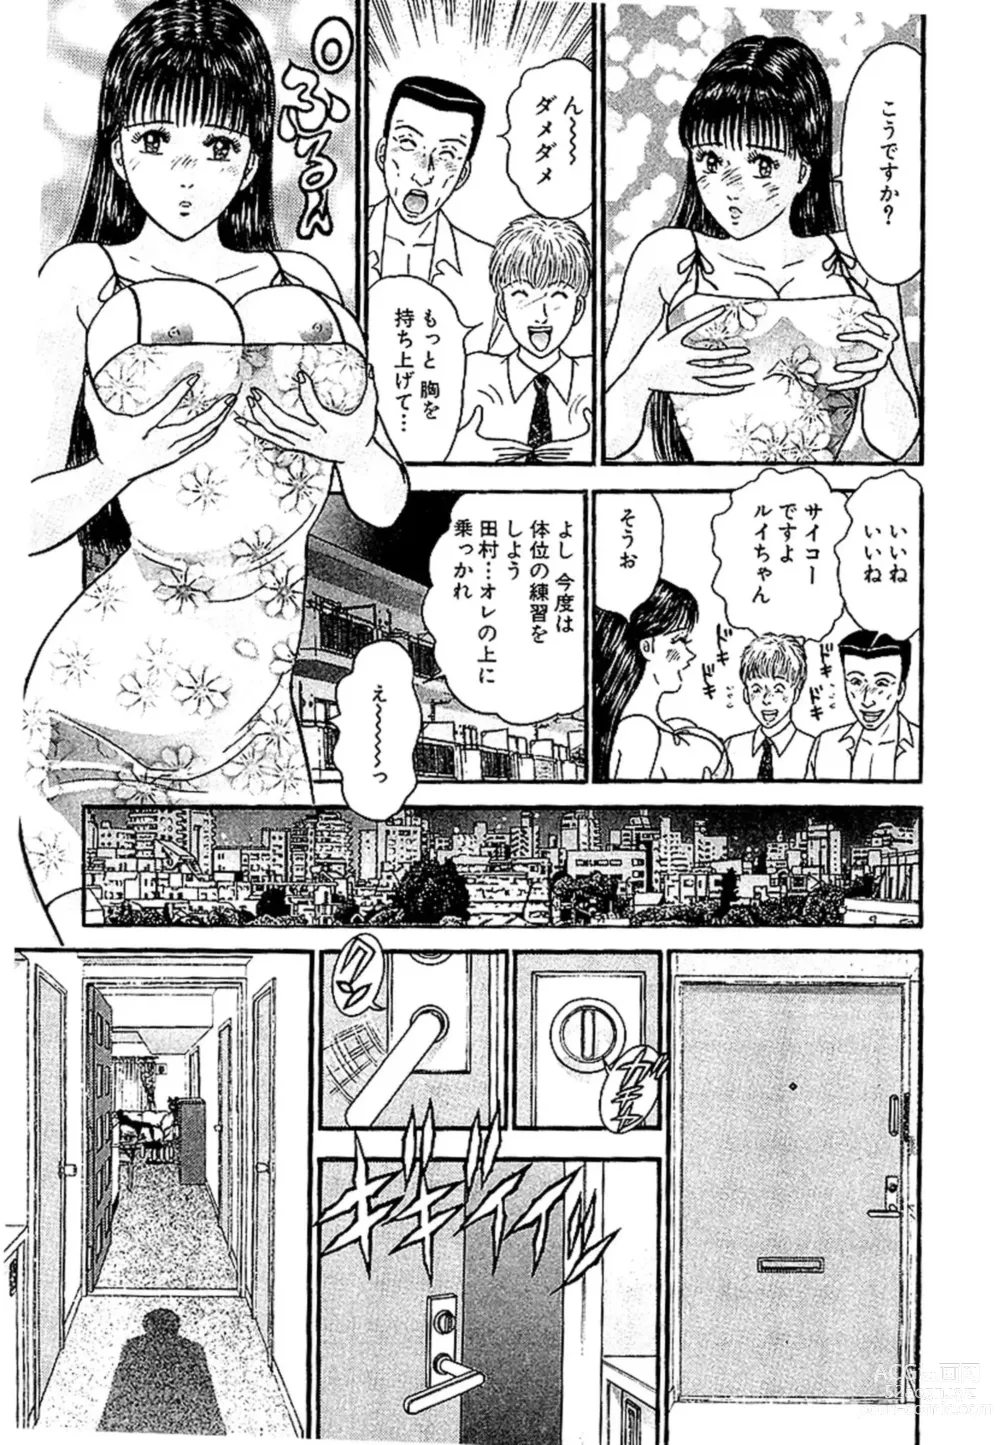 Page 196 of manga Sekkusuresu Shinsō-ban 1